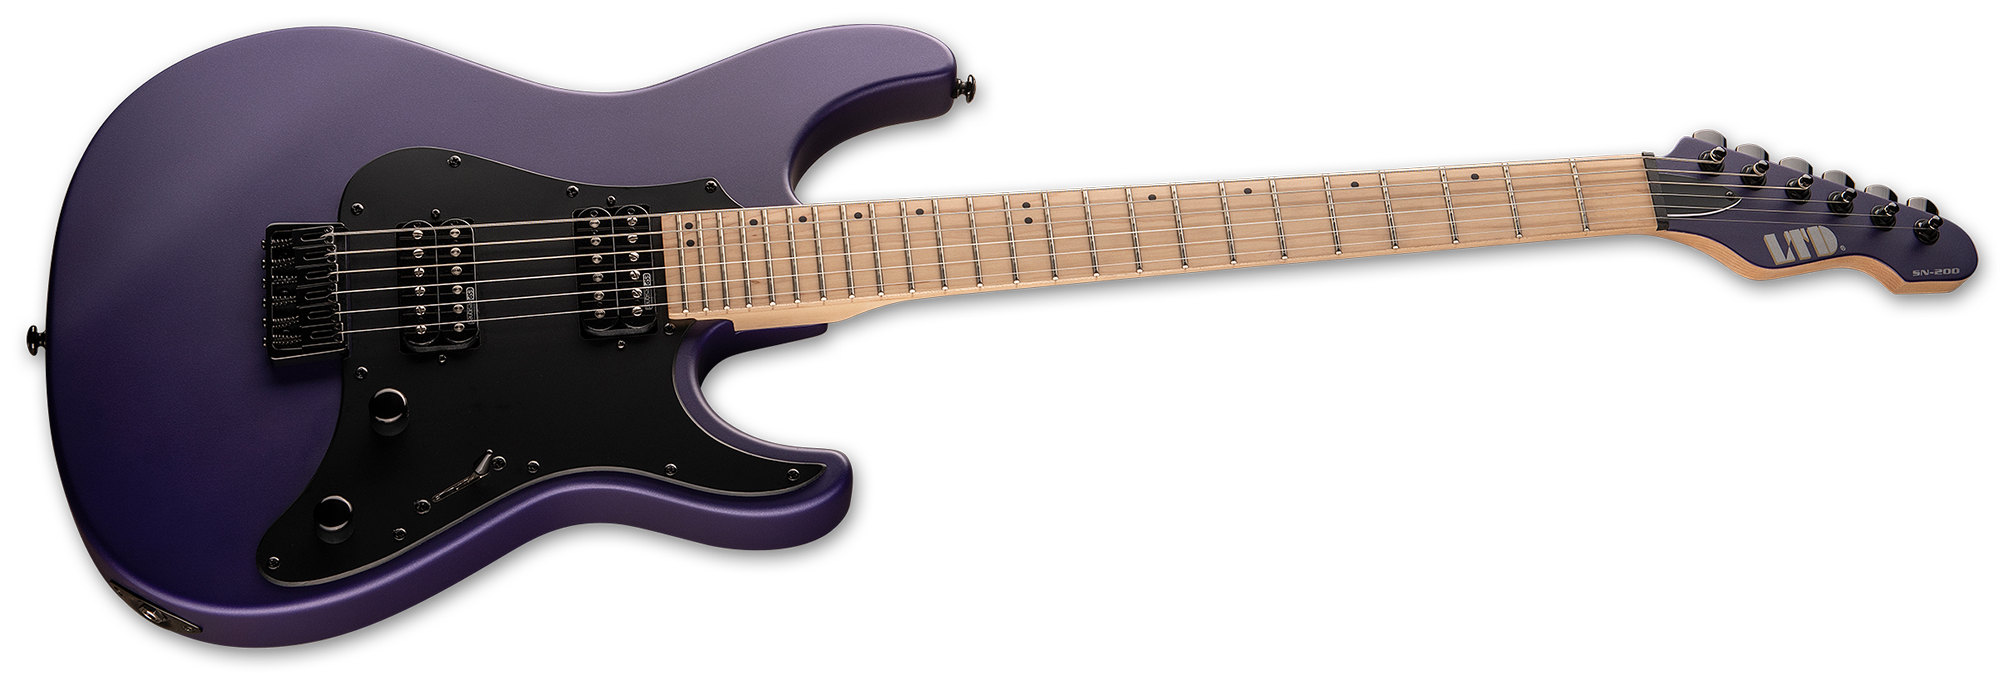 Ltd Sn-200ht Hh Ht Mn - Dark Metallic Purple Satin - Elektrische gitaar in Str-vorm - Variation 1